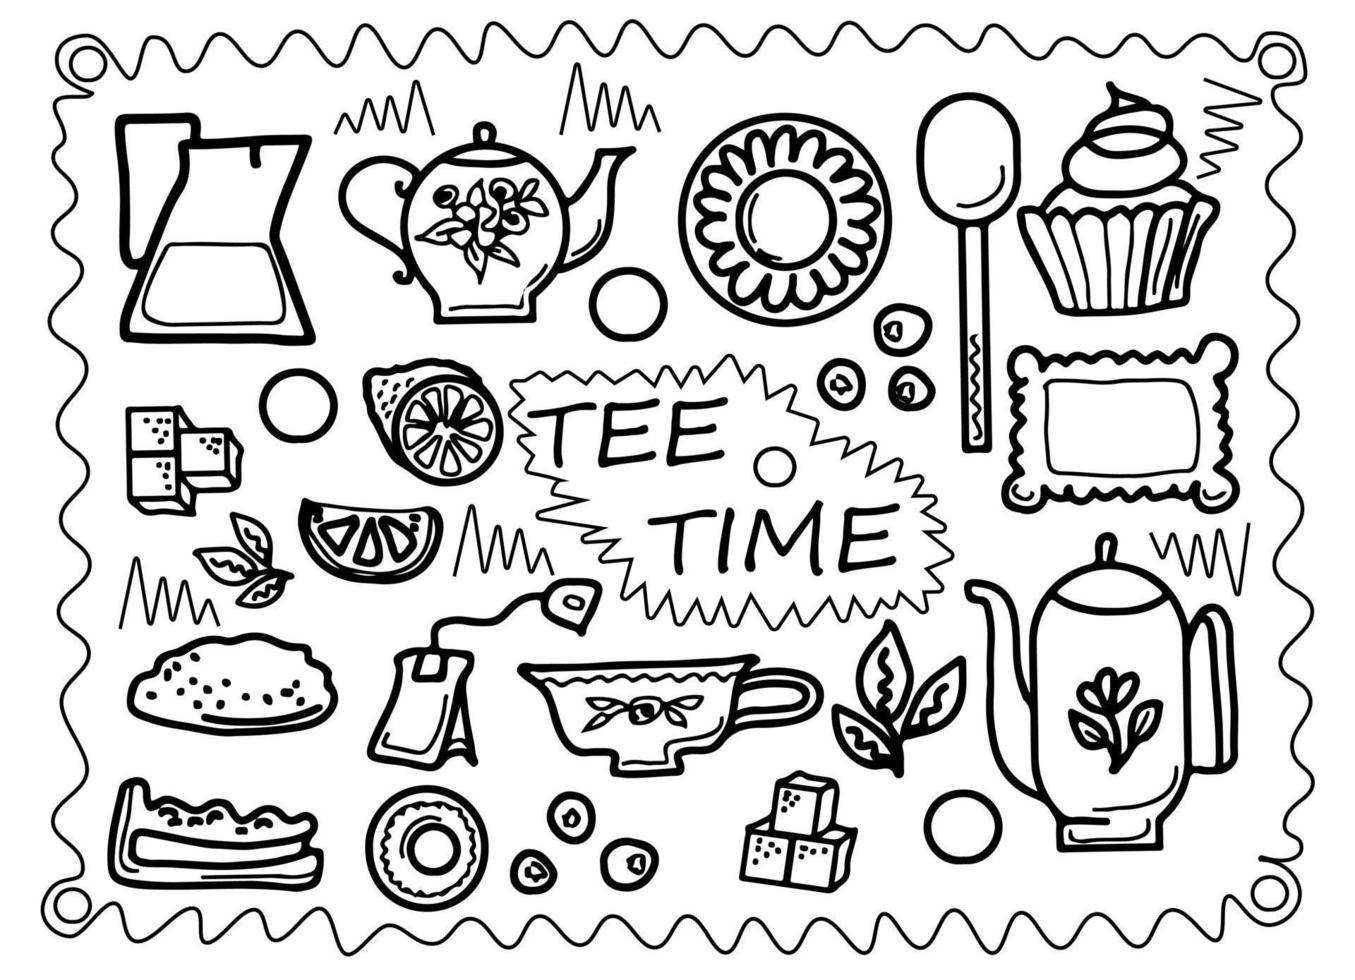 zwart-wit doodle stijl vectorillustratie met theekransje set, achtergrond voor restaurant of café menu vector